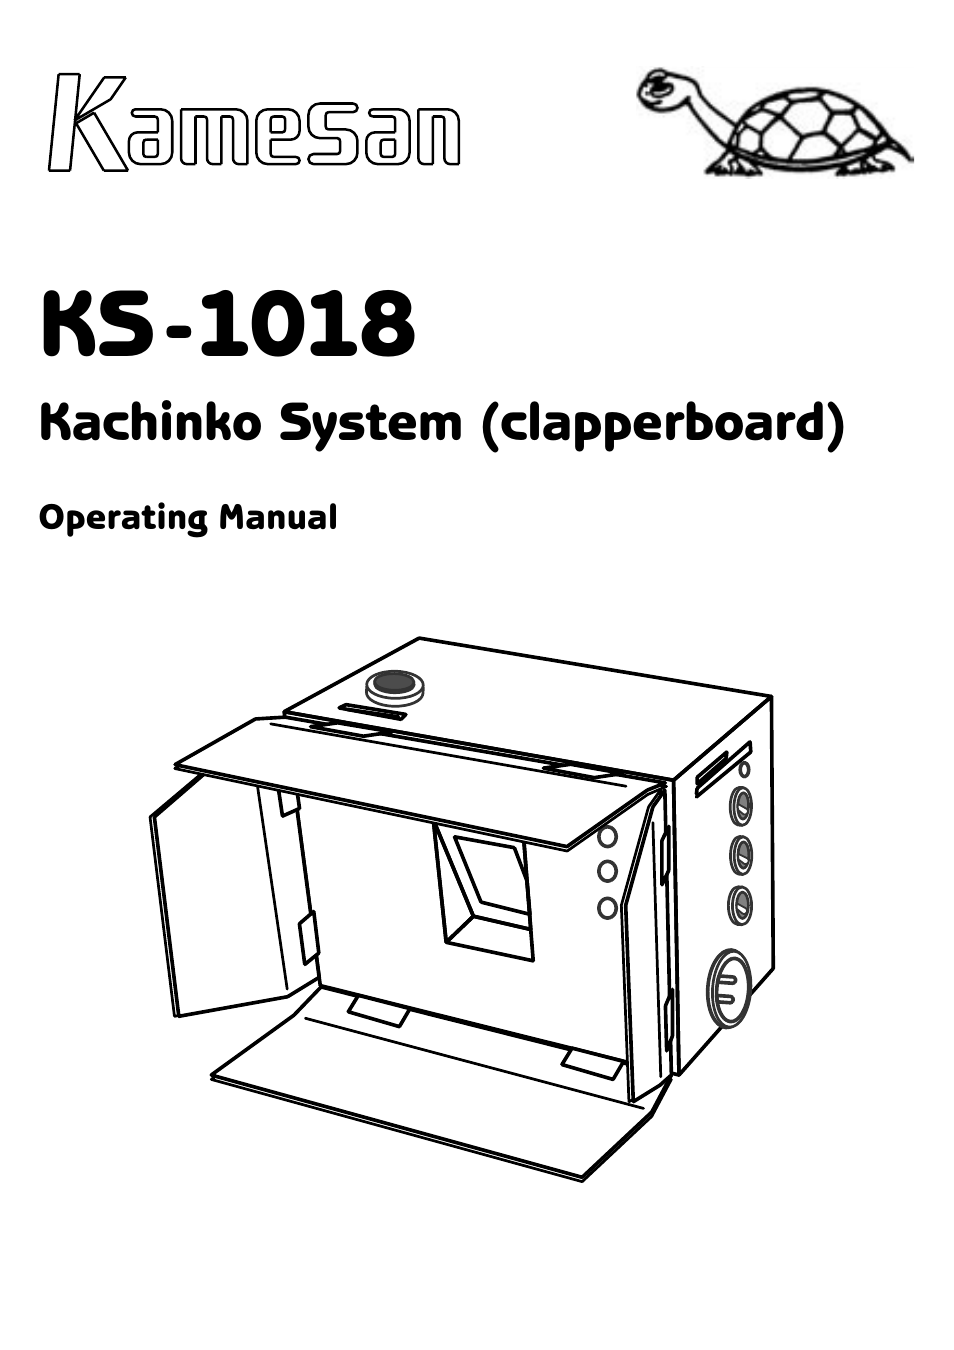 KS-1018